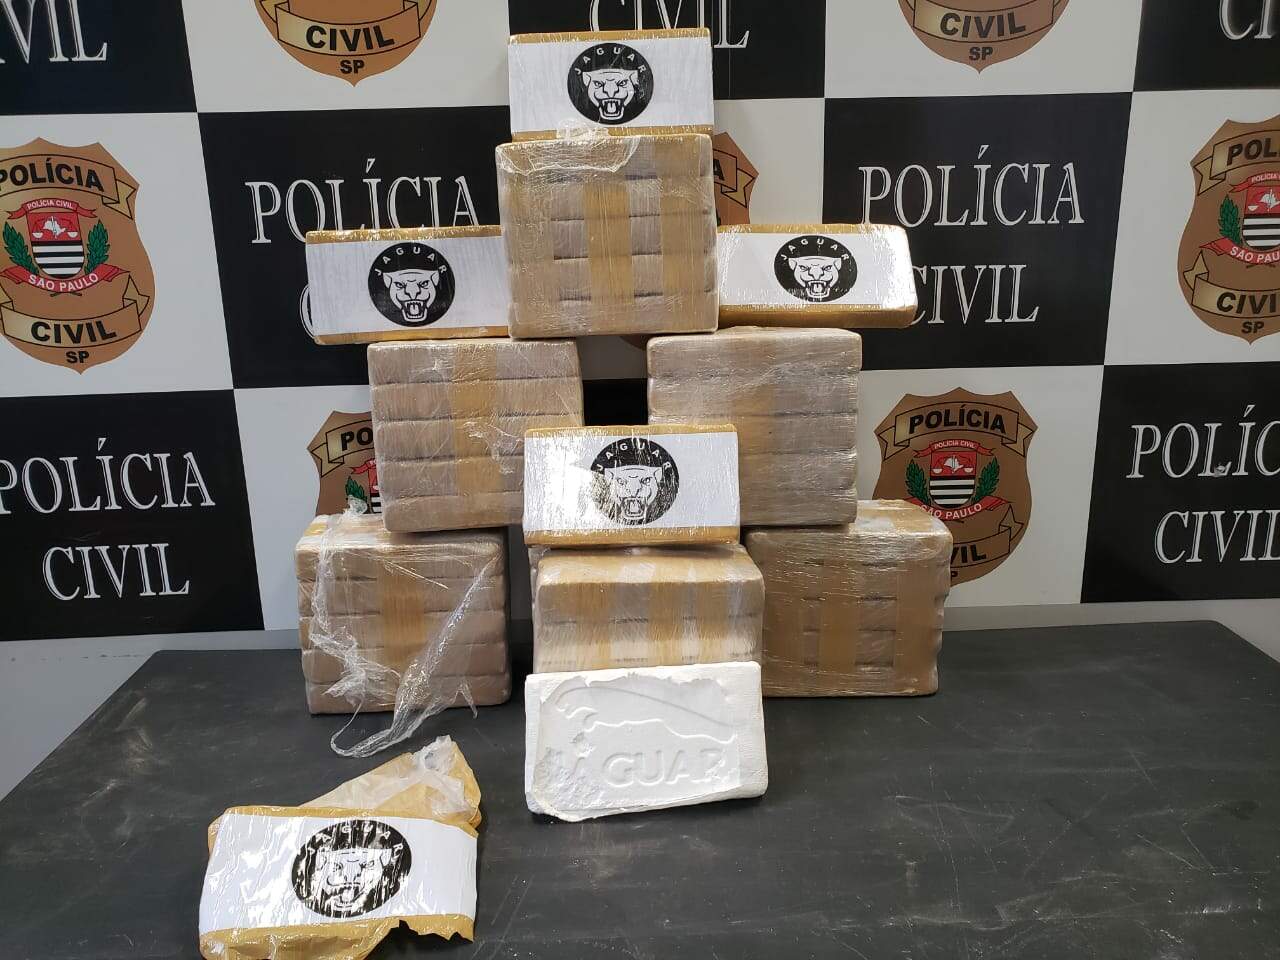 40 tabletes de cocaína foram apreendidos pela Polícia Civil